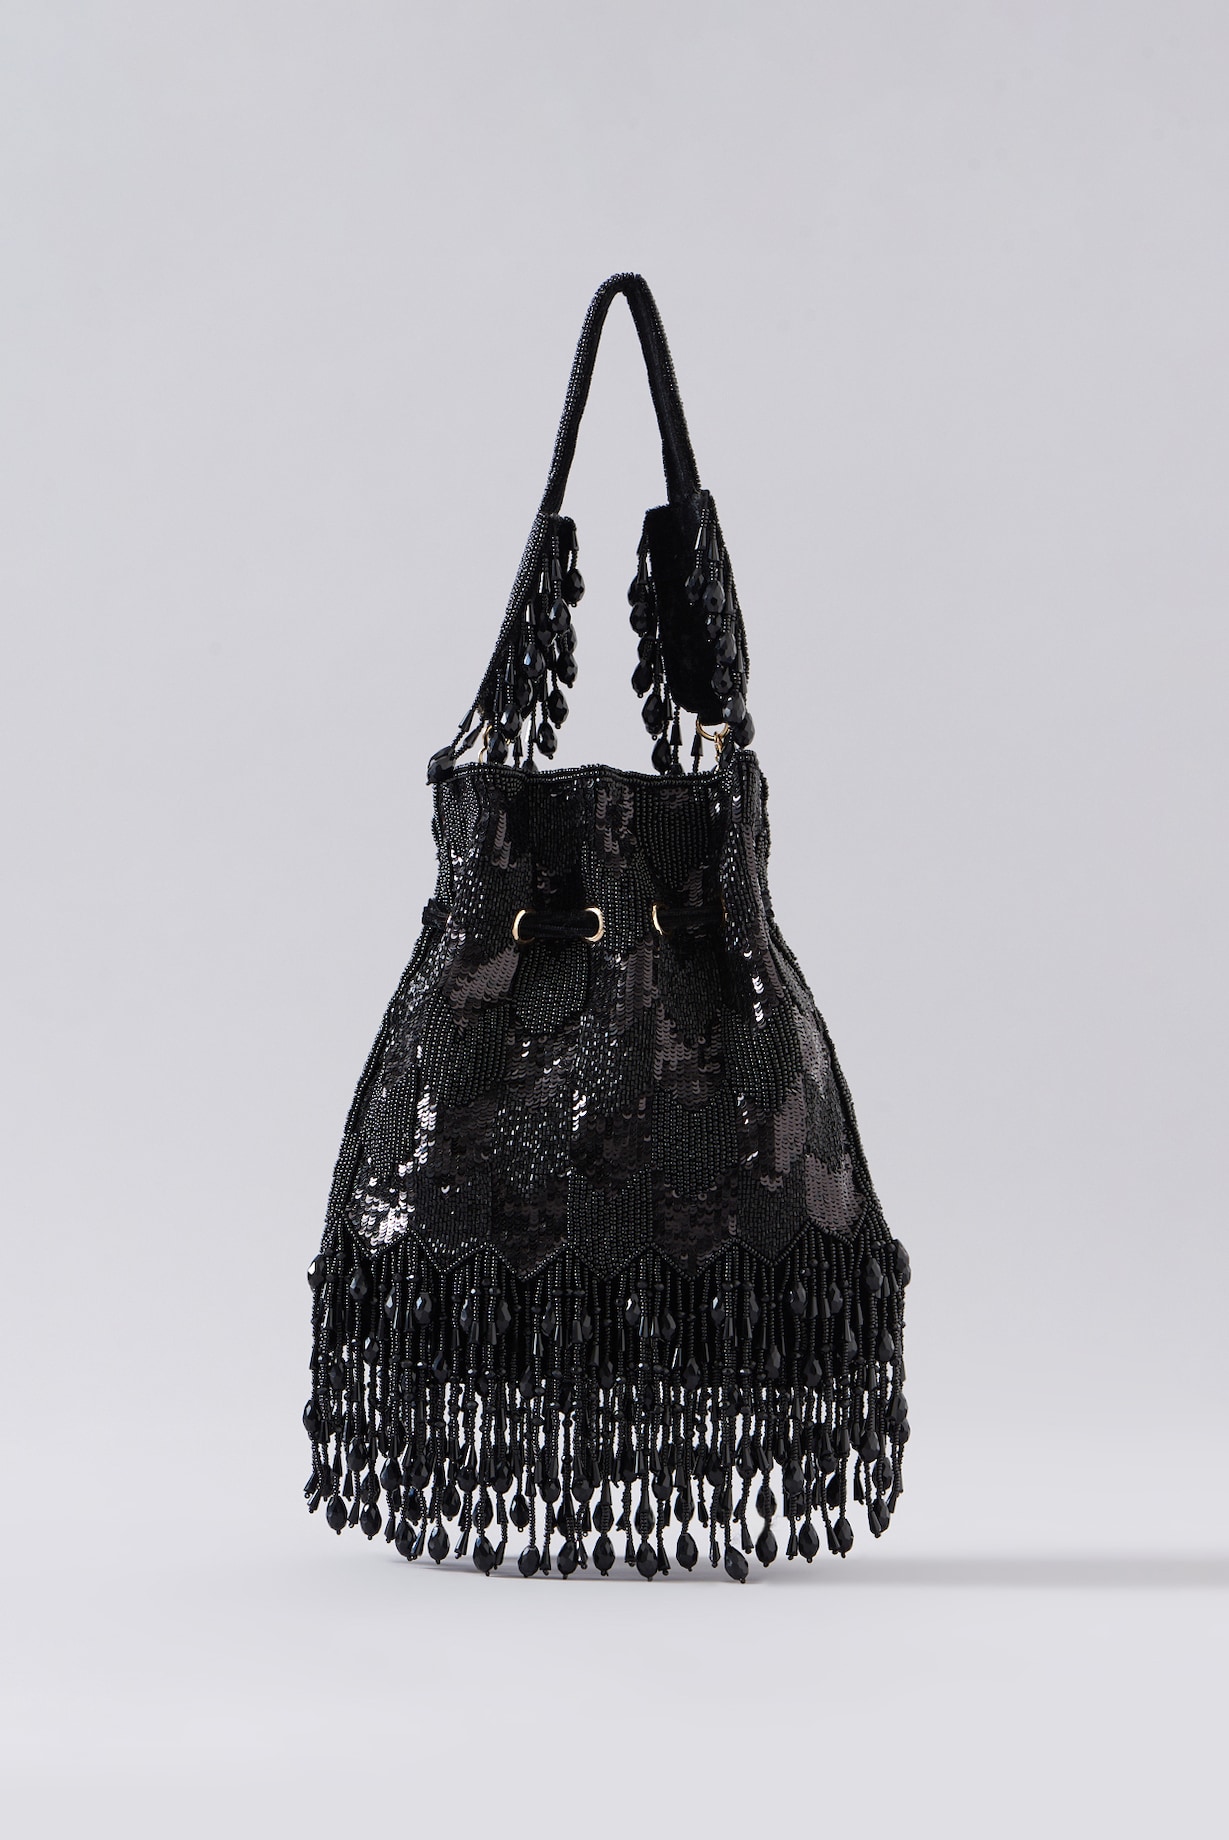 Buy Black Velvet Potli Bag Bags Online in India - The AMYRA Store